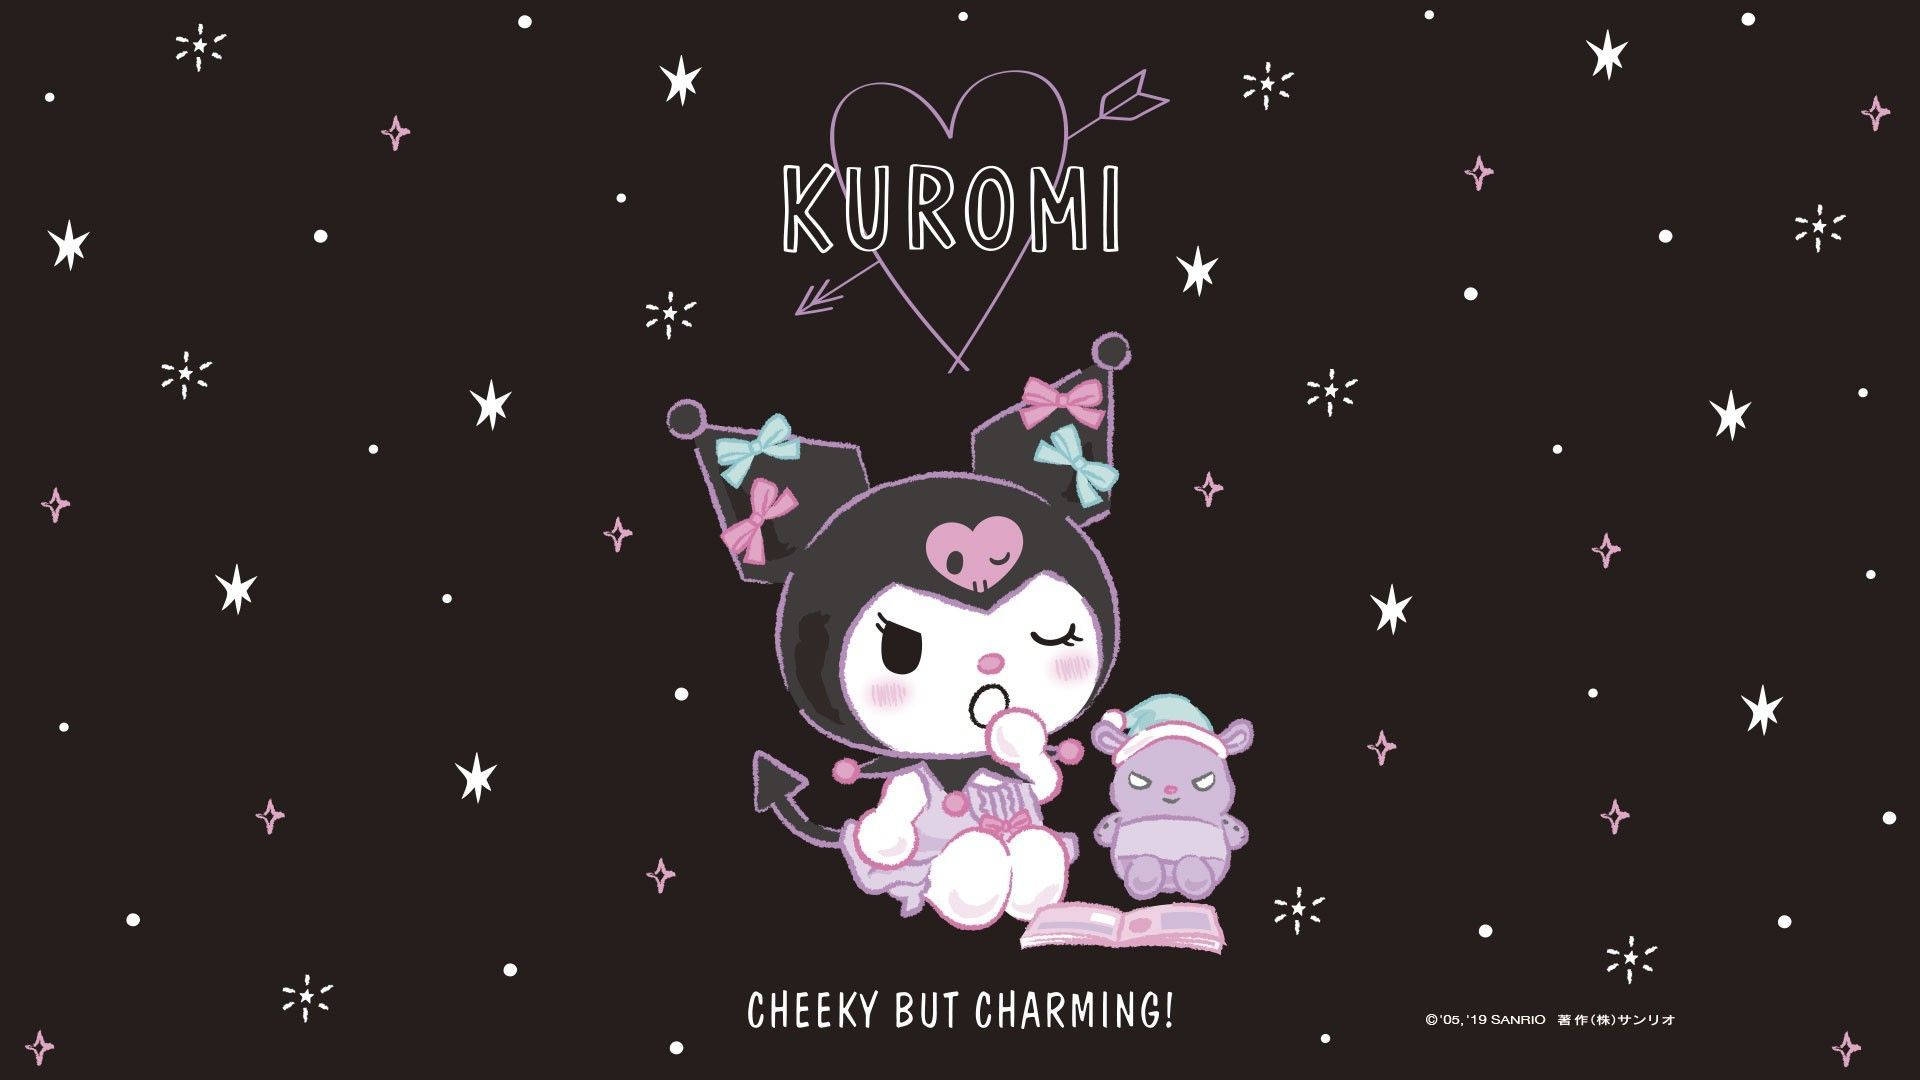 Kuromi Pictures Wallpaper